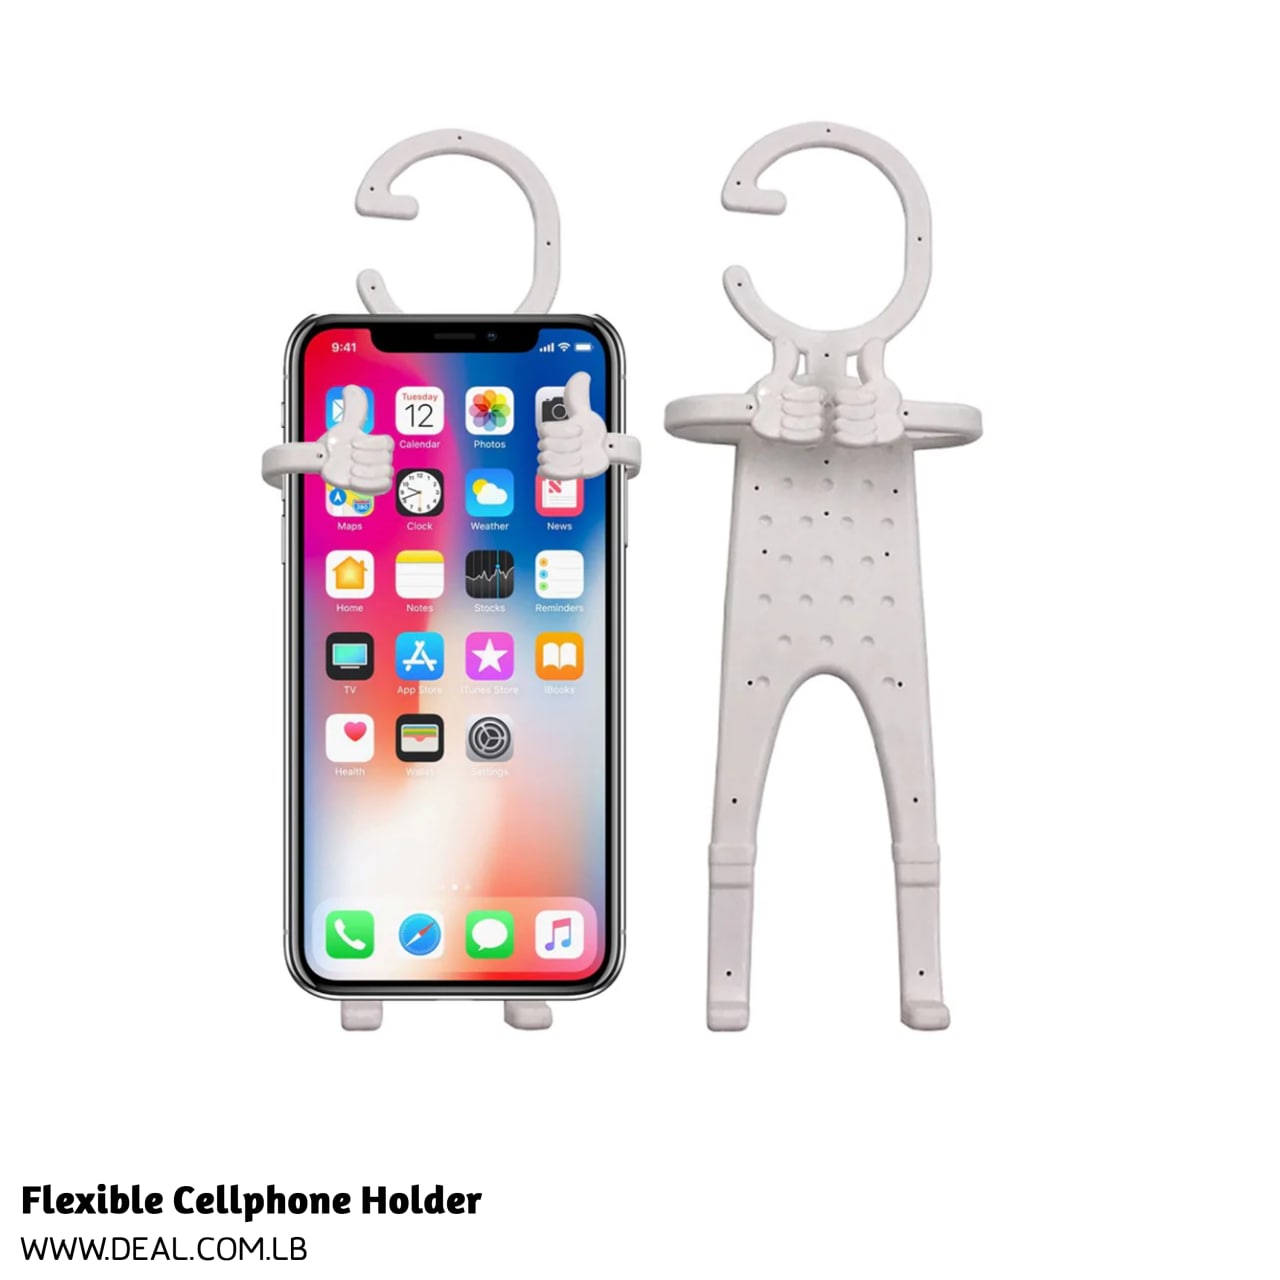 Flexible Cellphone Holder